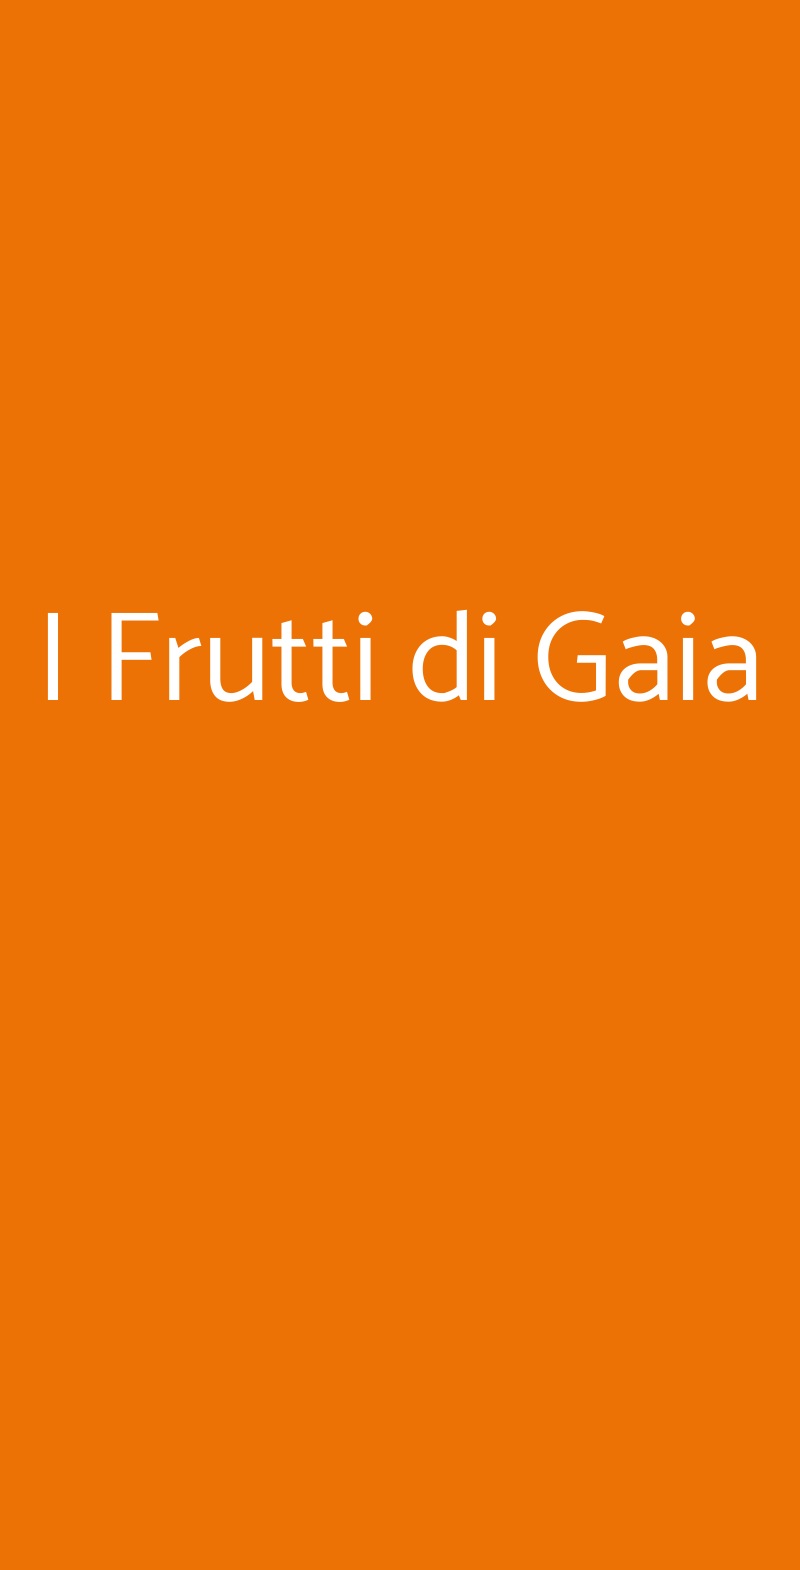 I Frutti di Gaia Torino menù 1 pagina